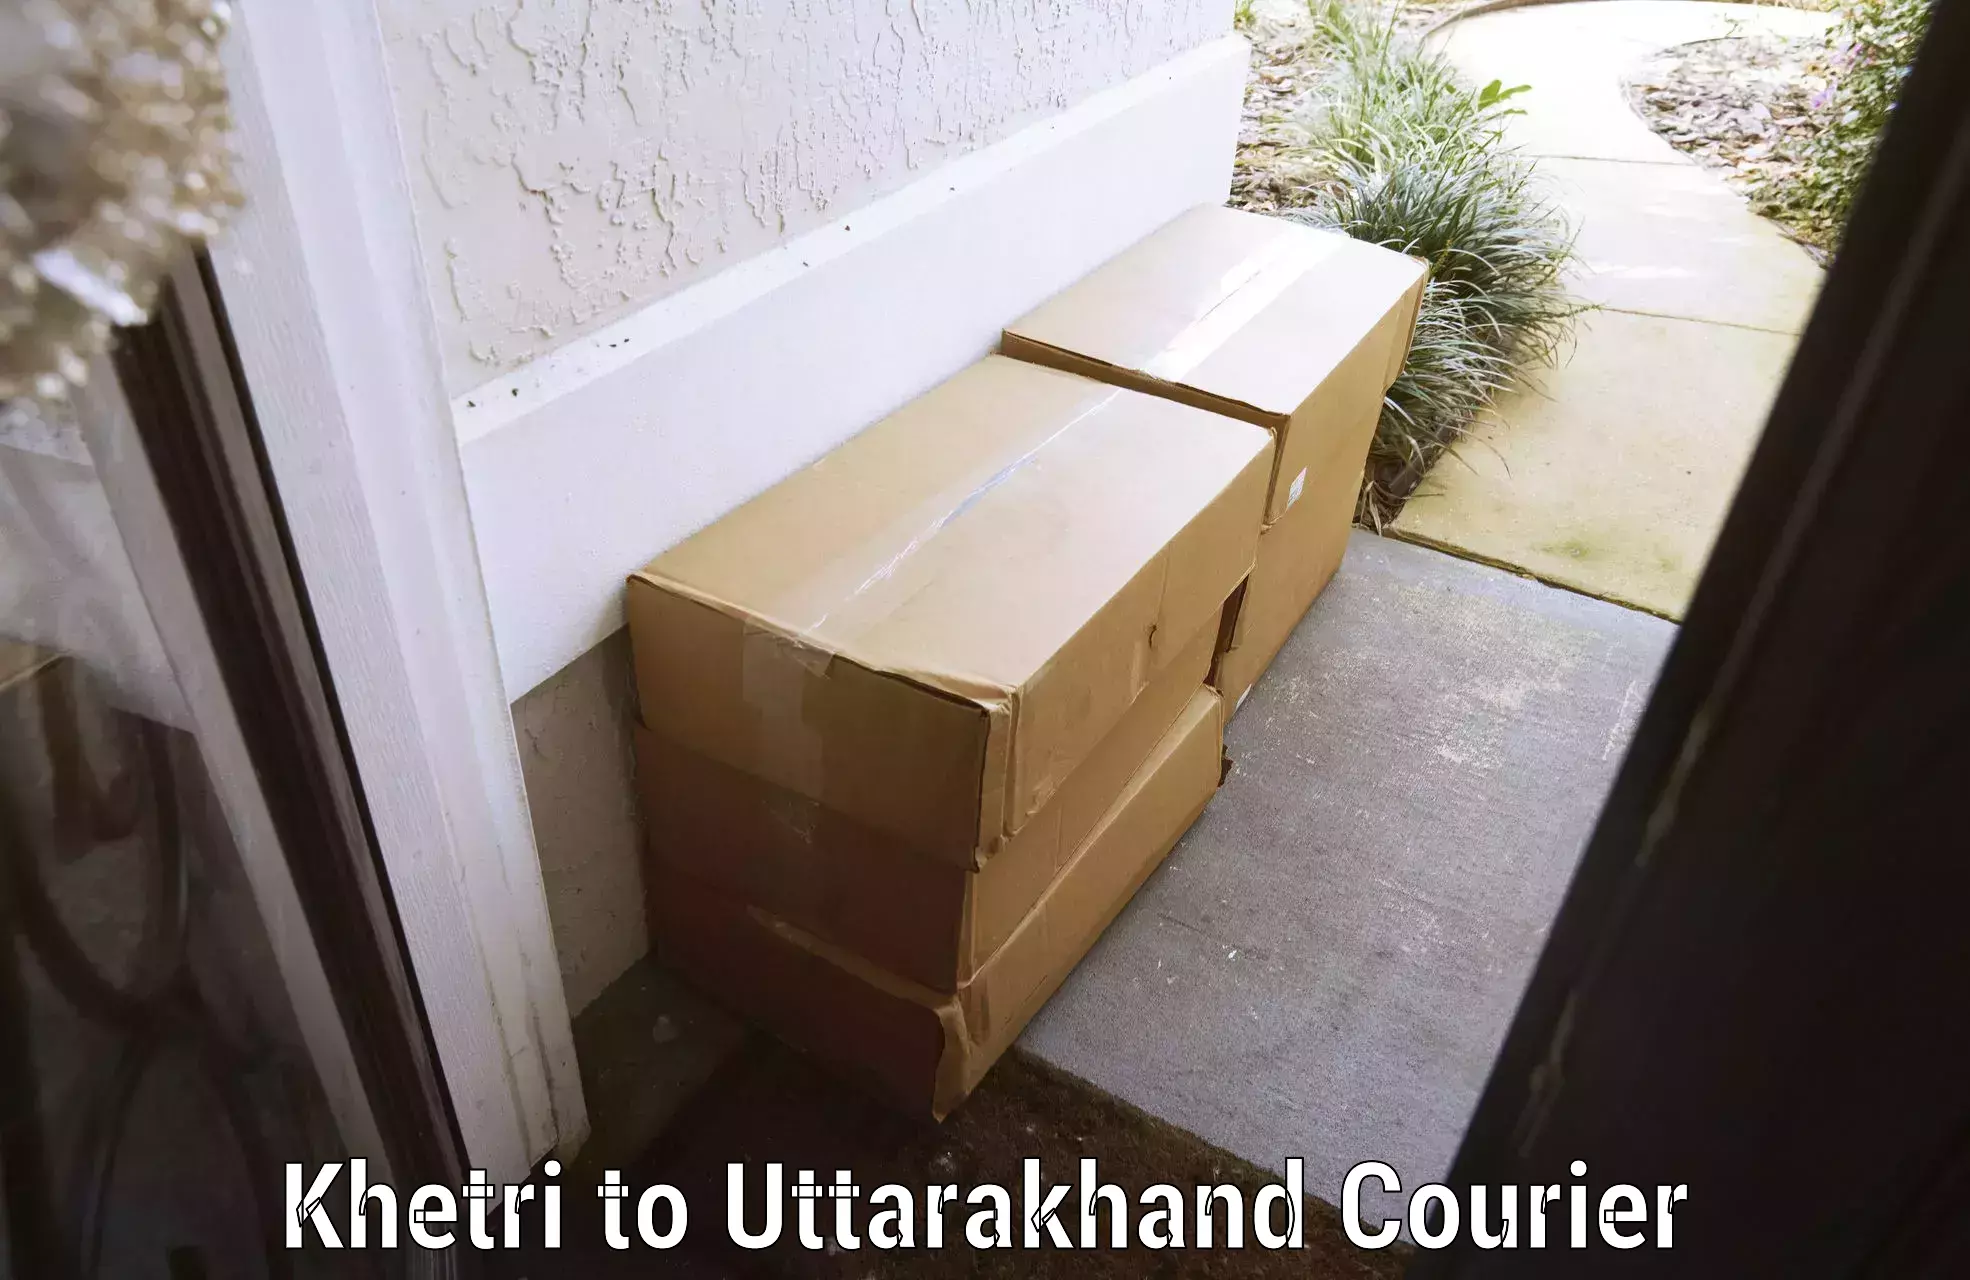 Door-to-door baggage service Khetri to Uttarakhand